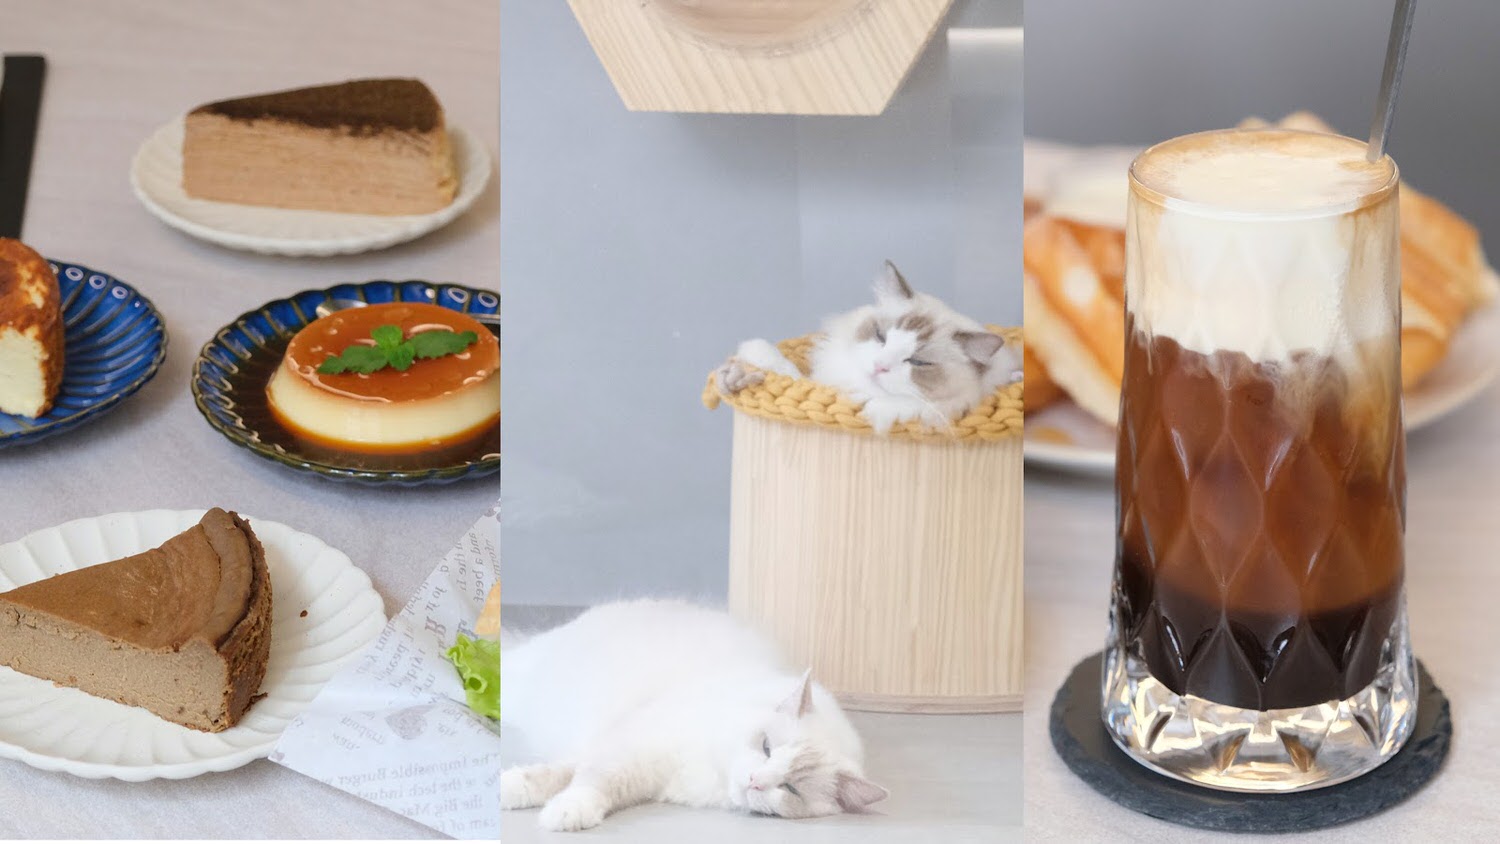 【新店咖啡廳甜點店】晒渡咖啡saiducafe 寵物友善咖啡廳推薦！內有兩隻可愛布偶貓/多款當日手作巴斯克蛋糕